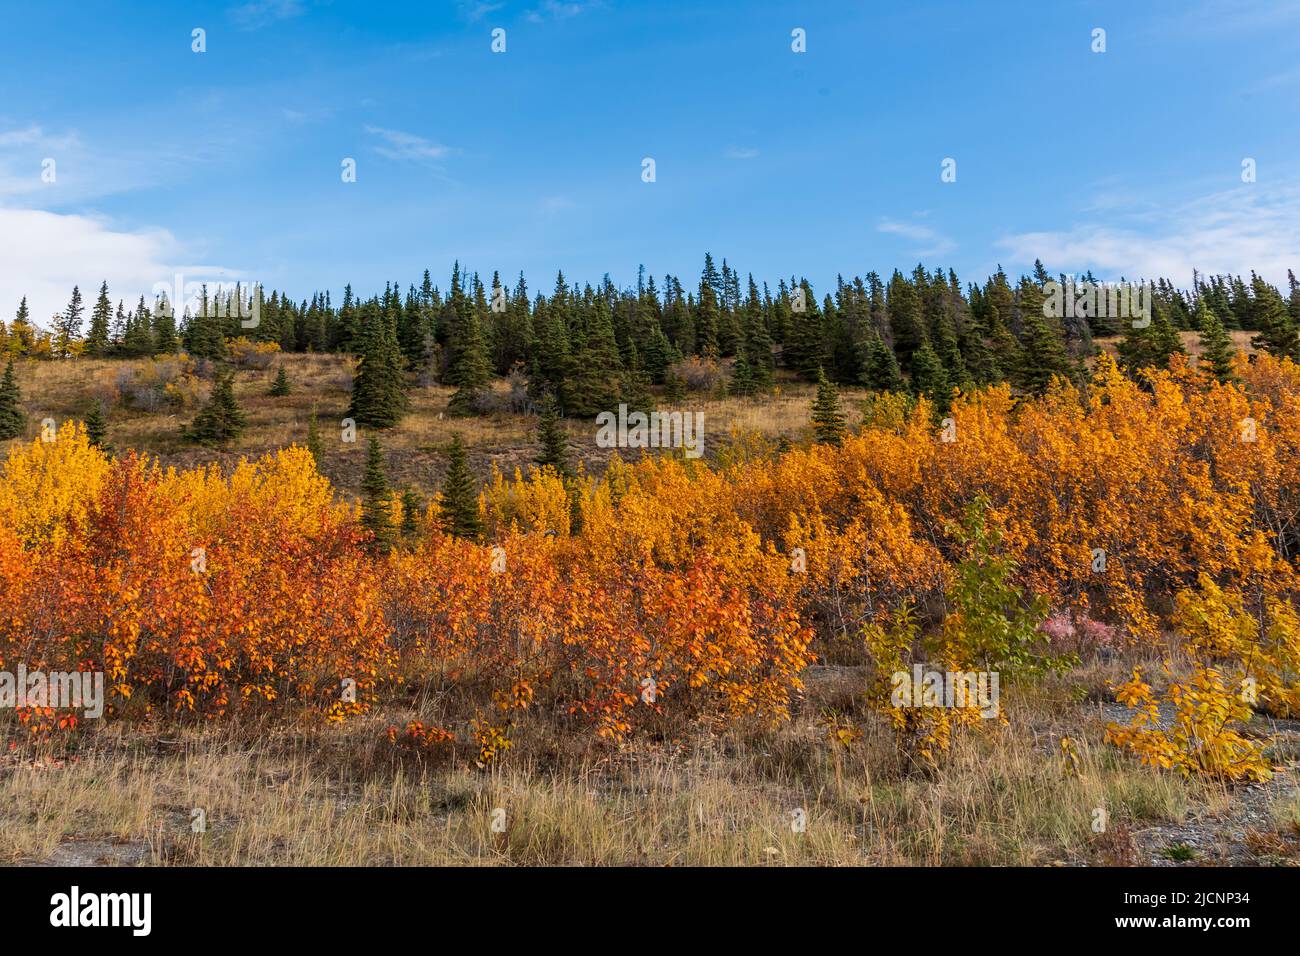 Herbstfarbener Pflanzen in einer goldenen Landschaft aus dem Yukon Territory im Norden Kanadas im September, der Herbstsaison. Stockfoto